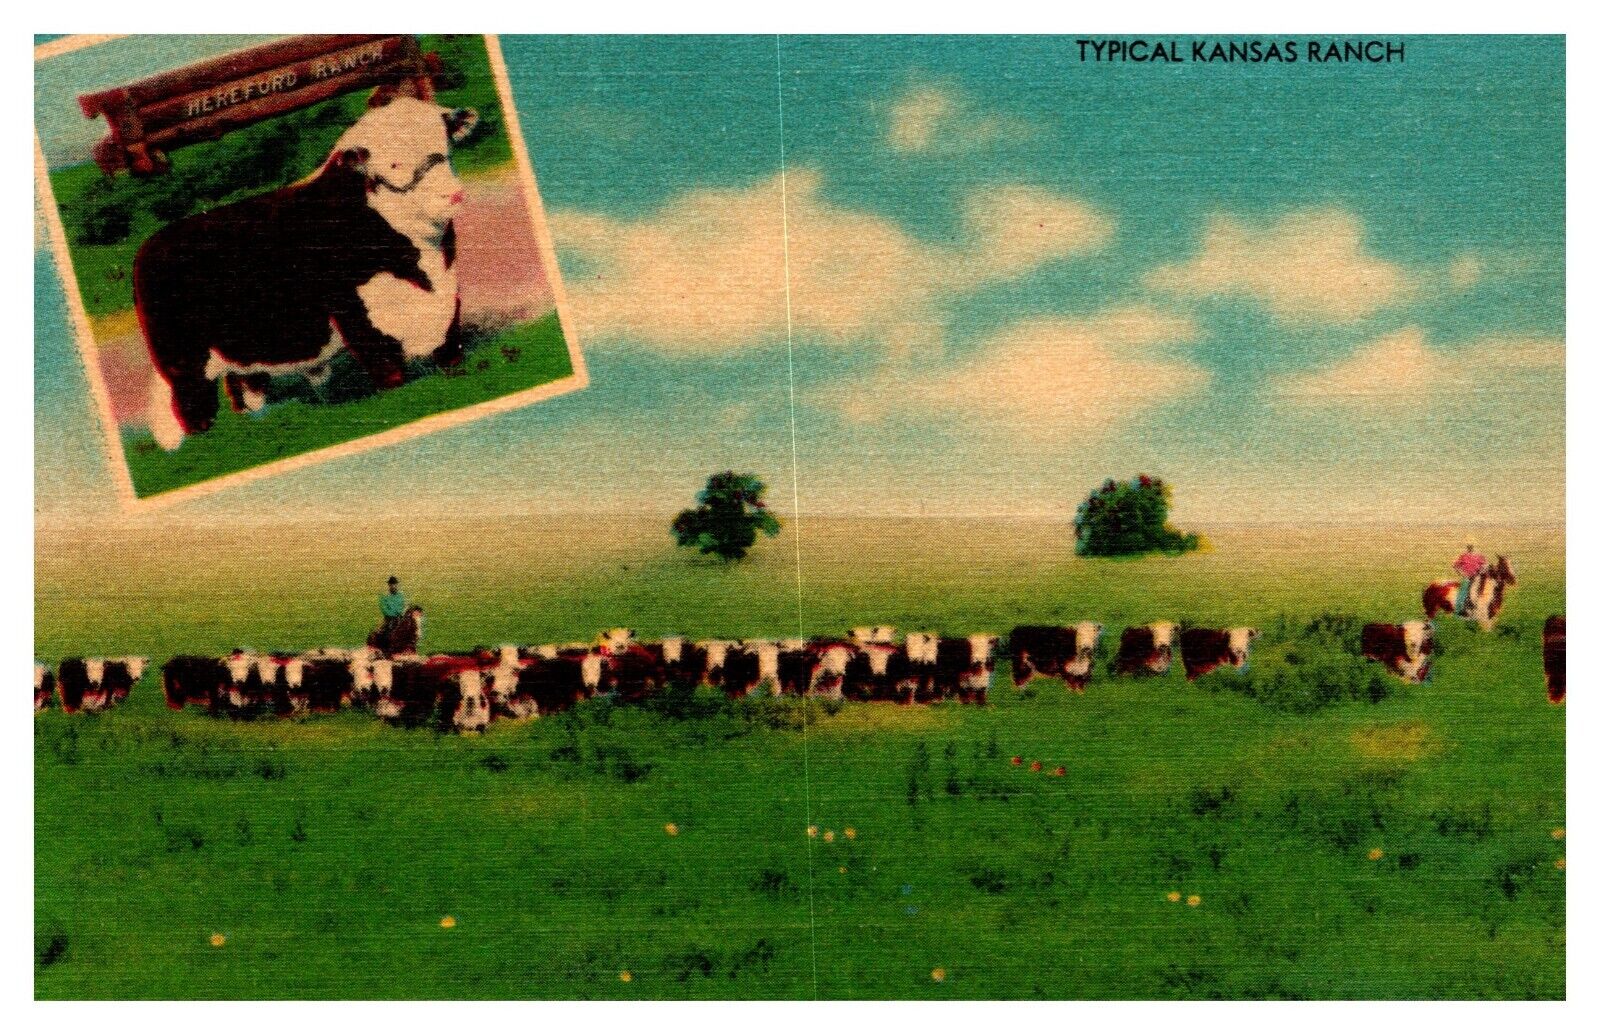 KS Kansas Typical Kansas Ranch Cattle 4094F Linen Postcard